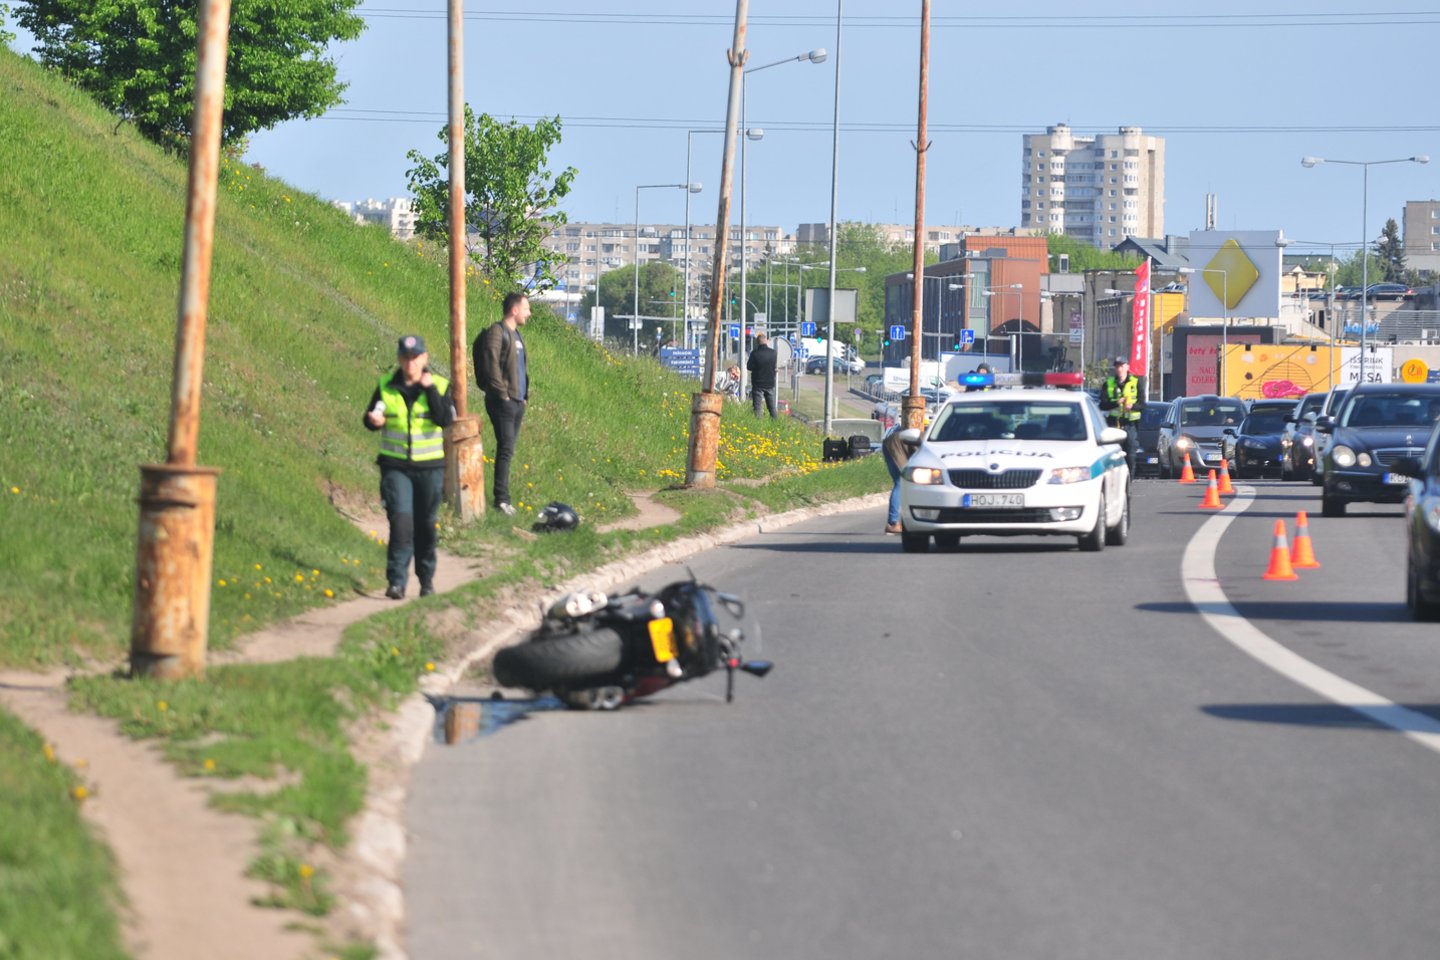 Nors motociklų sezonas prasidėjo vos prieš kelis mėnesius, tačiau eismo įvykių statistika neraminanti: vien gegužės pabaigoje žuvo 2 motociklininkai. <br>A.Vaitkevičiaus nuotr.